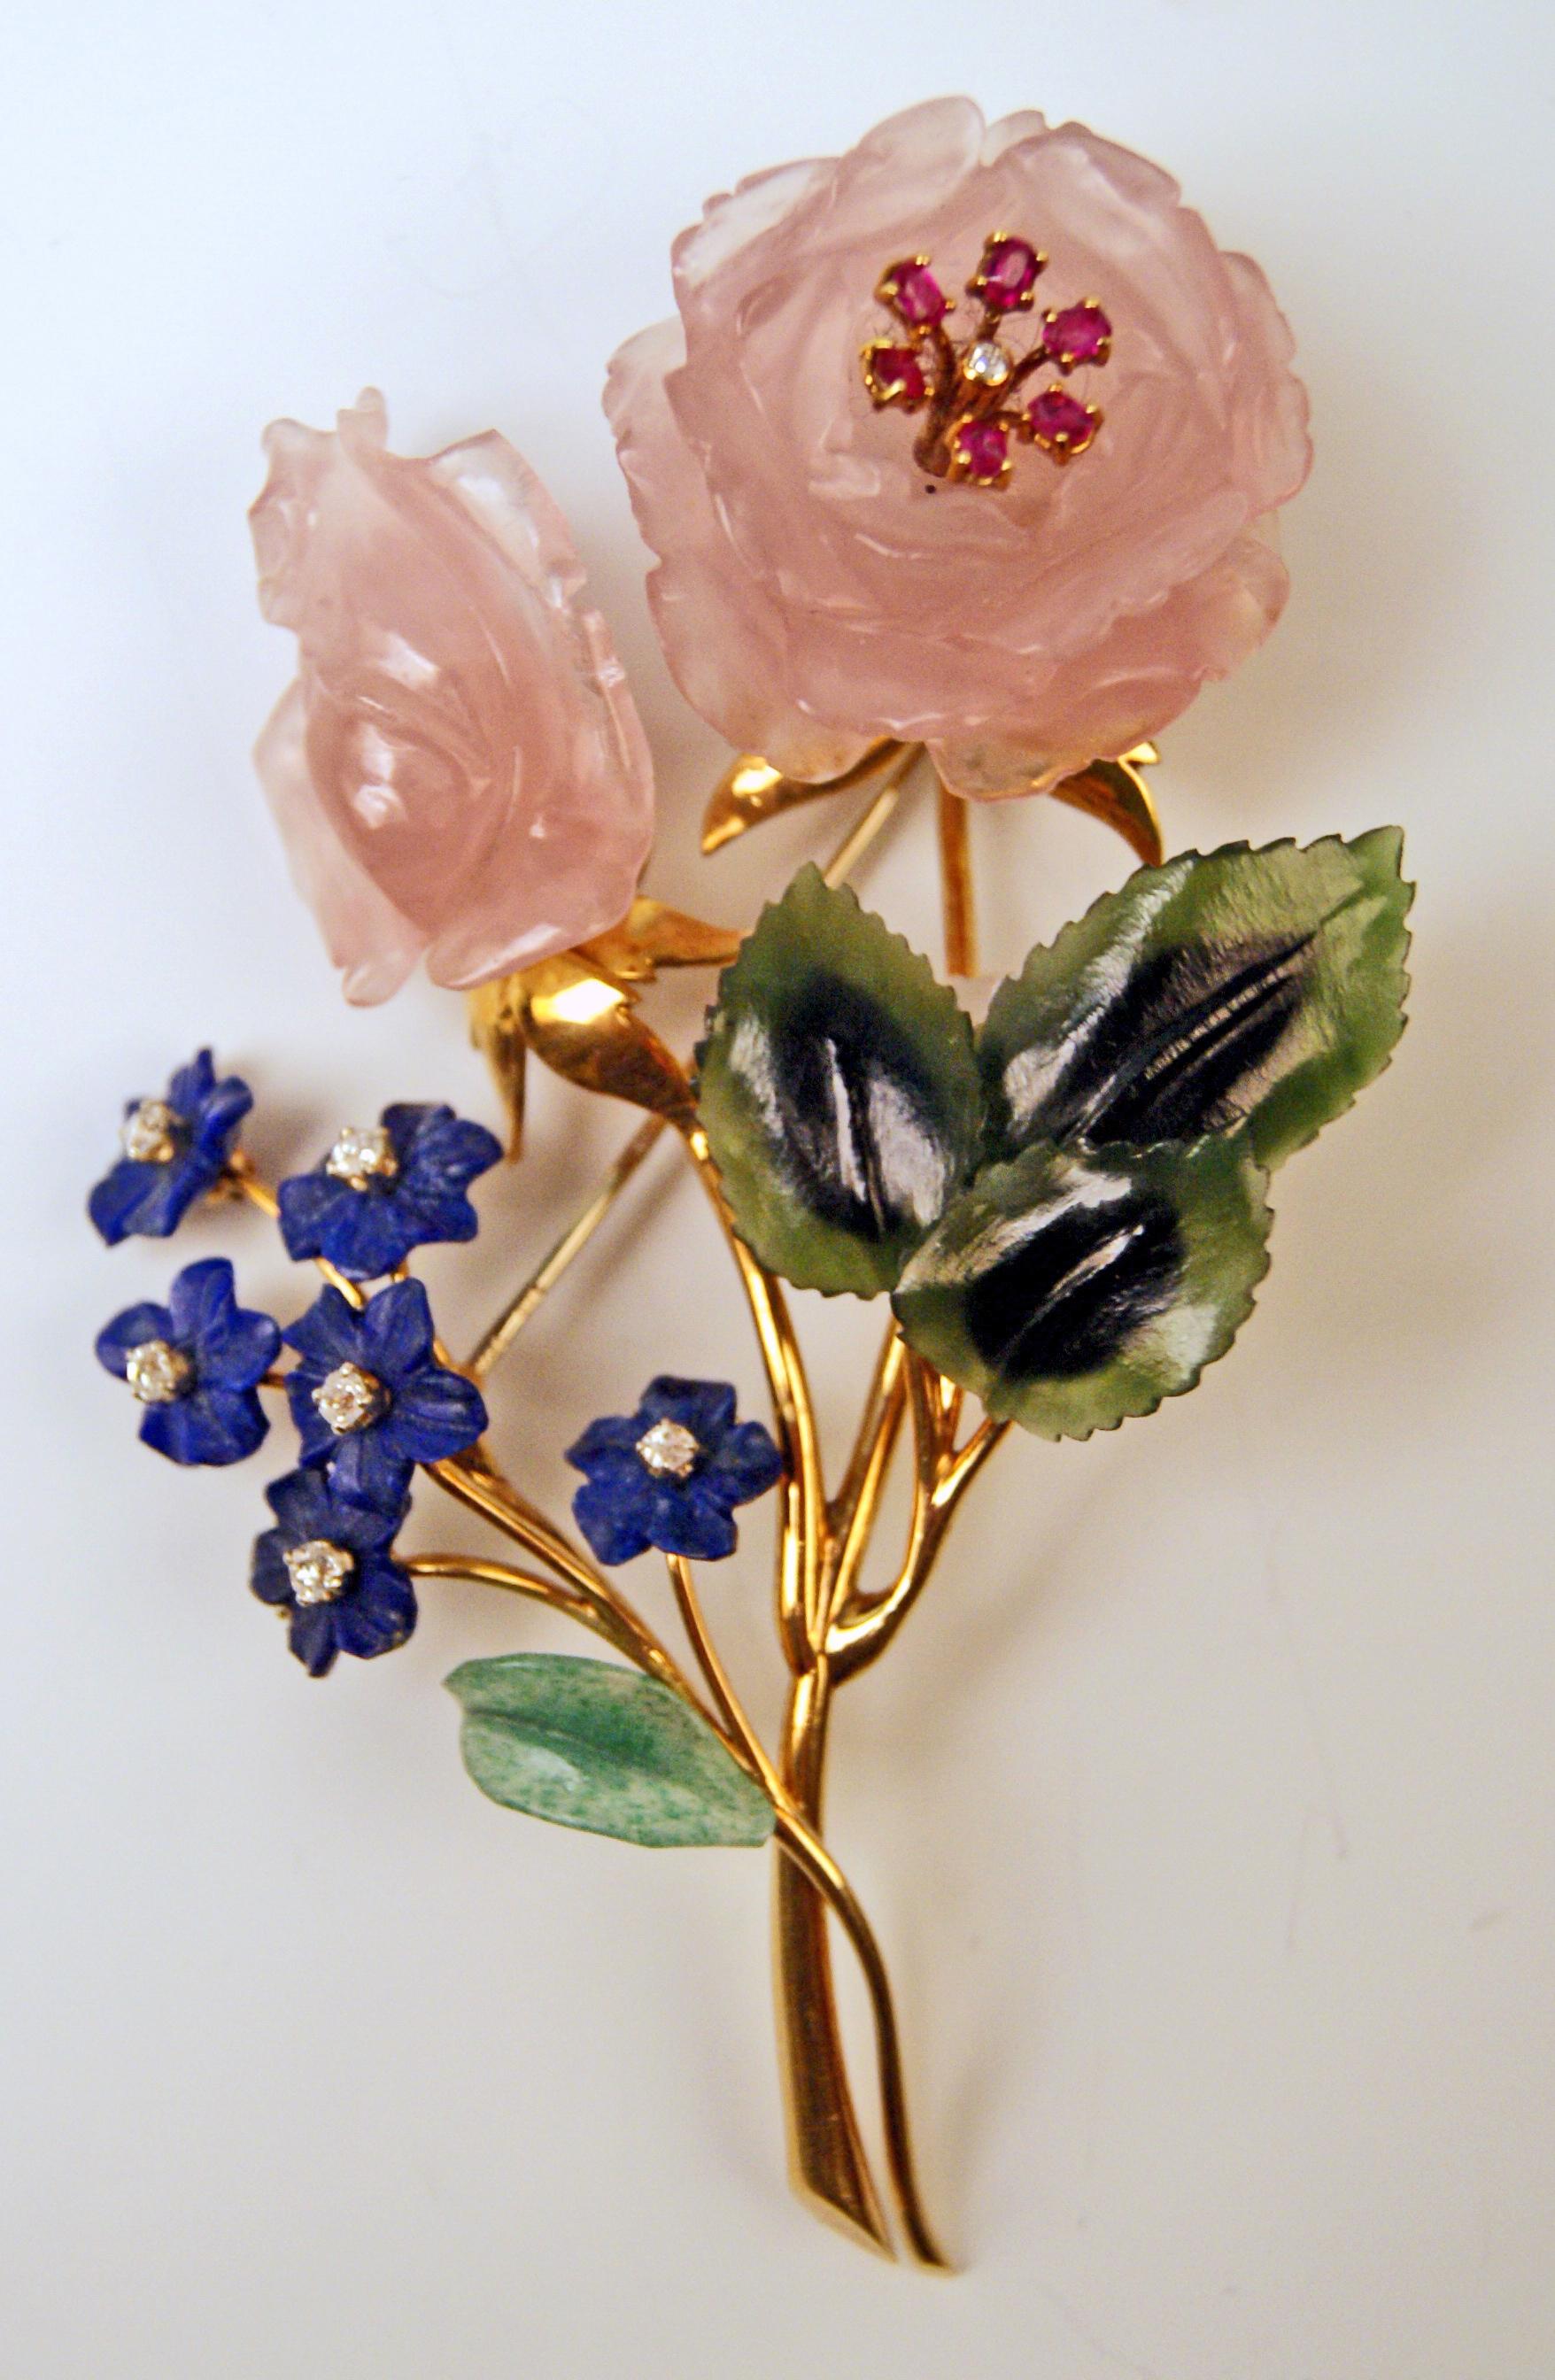 Feinstes Schmuckstück aus der zweiten Hälfte des 20. Jahrhunderts:
Die Brosche hat die Form eines Blumenstraußes und ist reichlich mit verschiedenen Edelsteinen besetzt: Das schönste gelbgoldene Schmuckstück ist mit Rosenquarz, Rubinen, Lapislazuli,